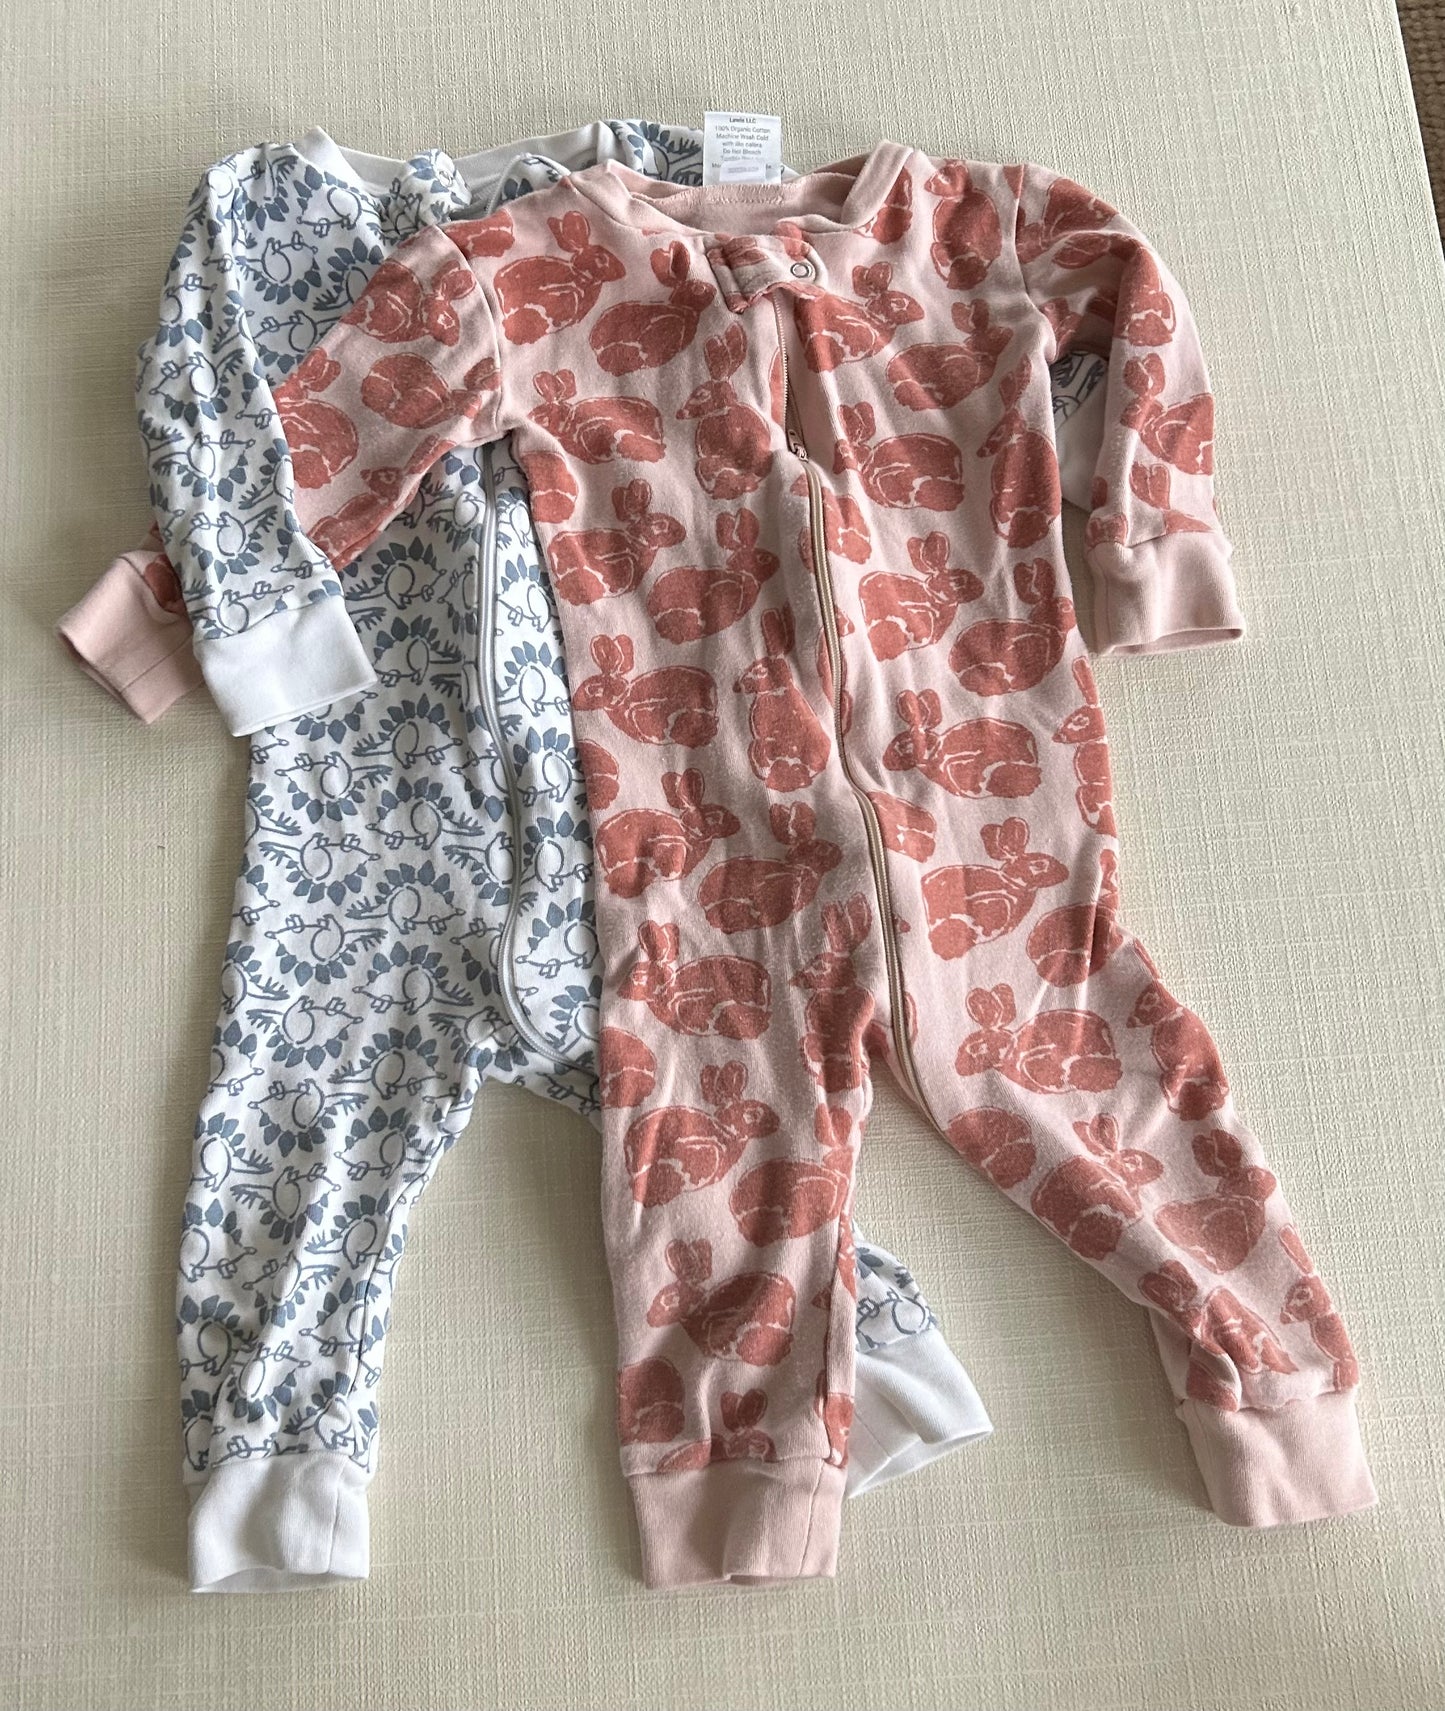 2 pairs of Lewis pajamas 12-18 months 45224